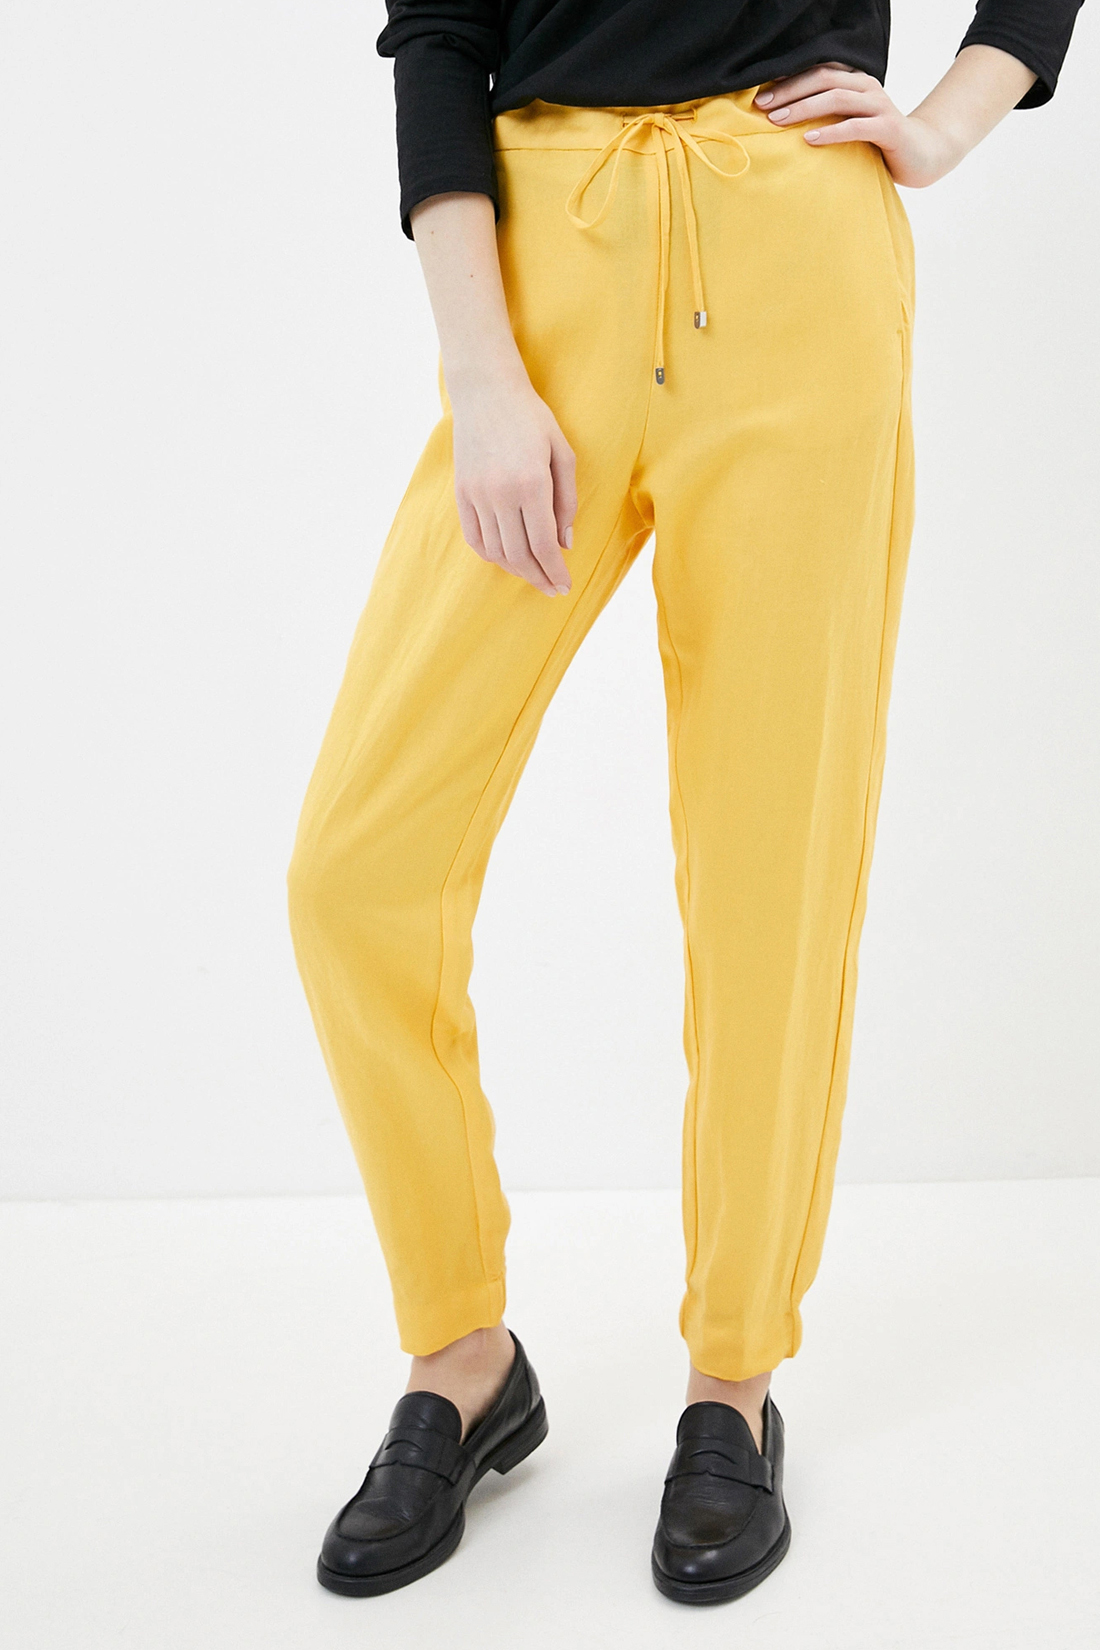 Спортивные брюки женские Baon B290048 желтые XL